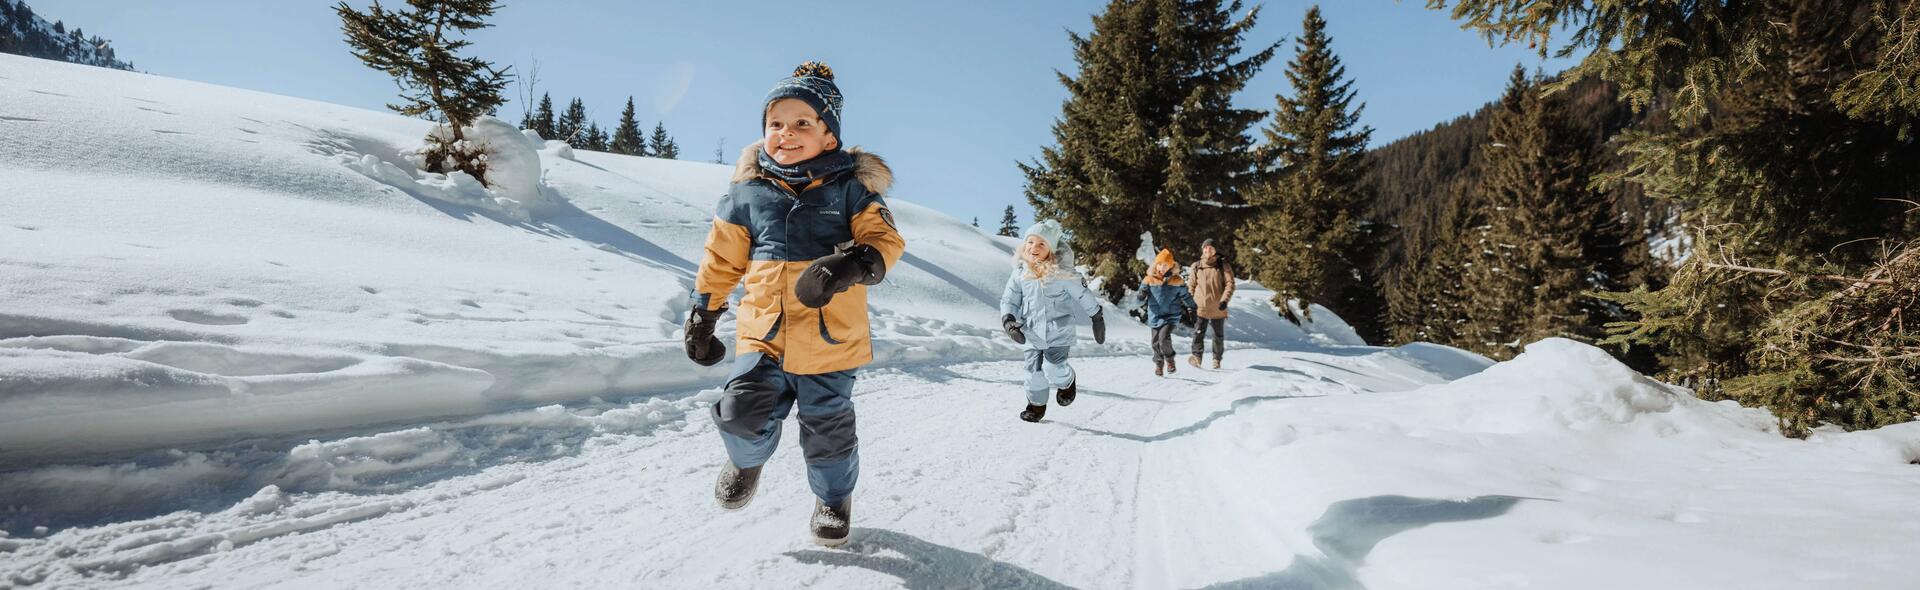 Hoe kunnen we onze kinderen beschermen tegen de kou?